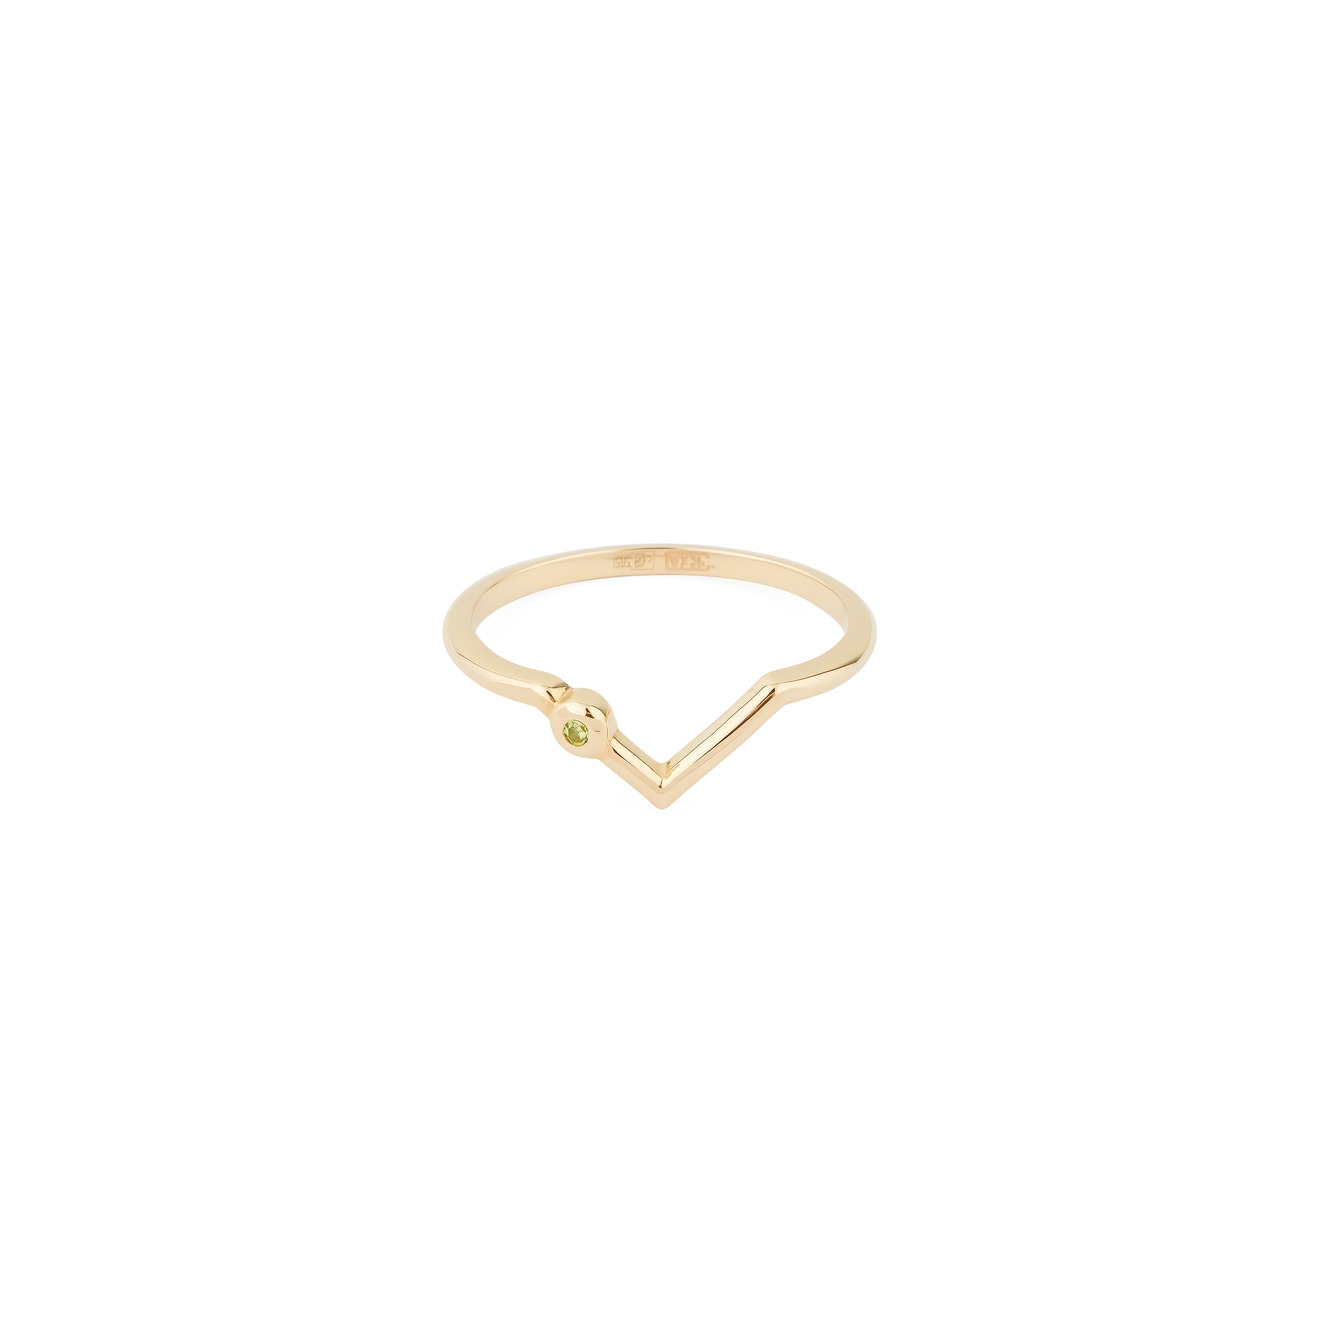 Herald Percy Diamonds Кольцо из желтого золота с треугольником и вставкой из демантоида herald percy diamonds кольцо из белого золота с треугольником и вставкой из демантоида